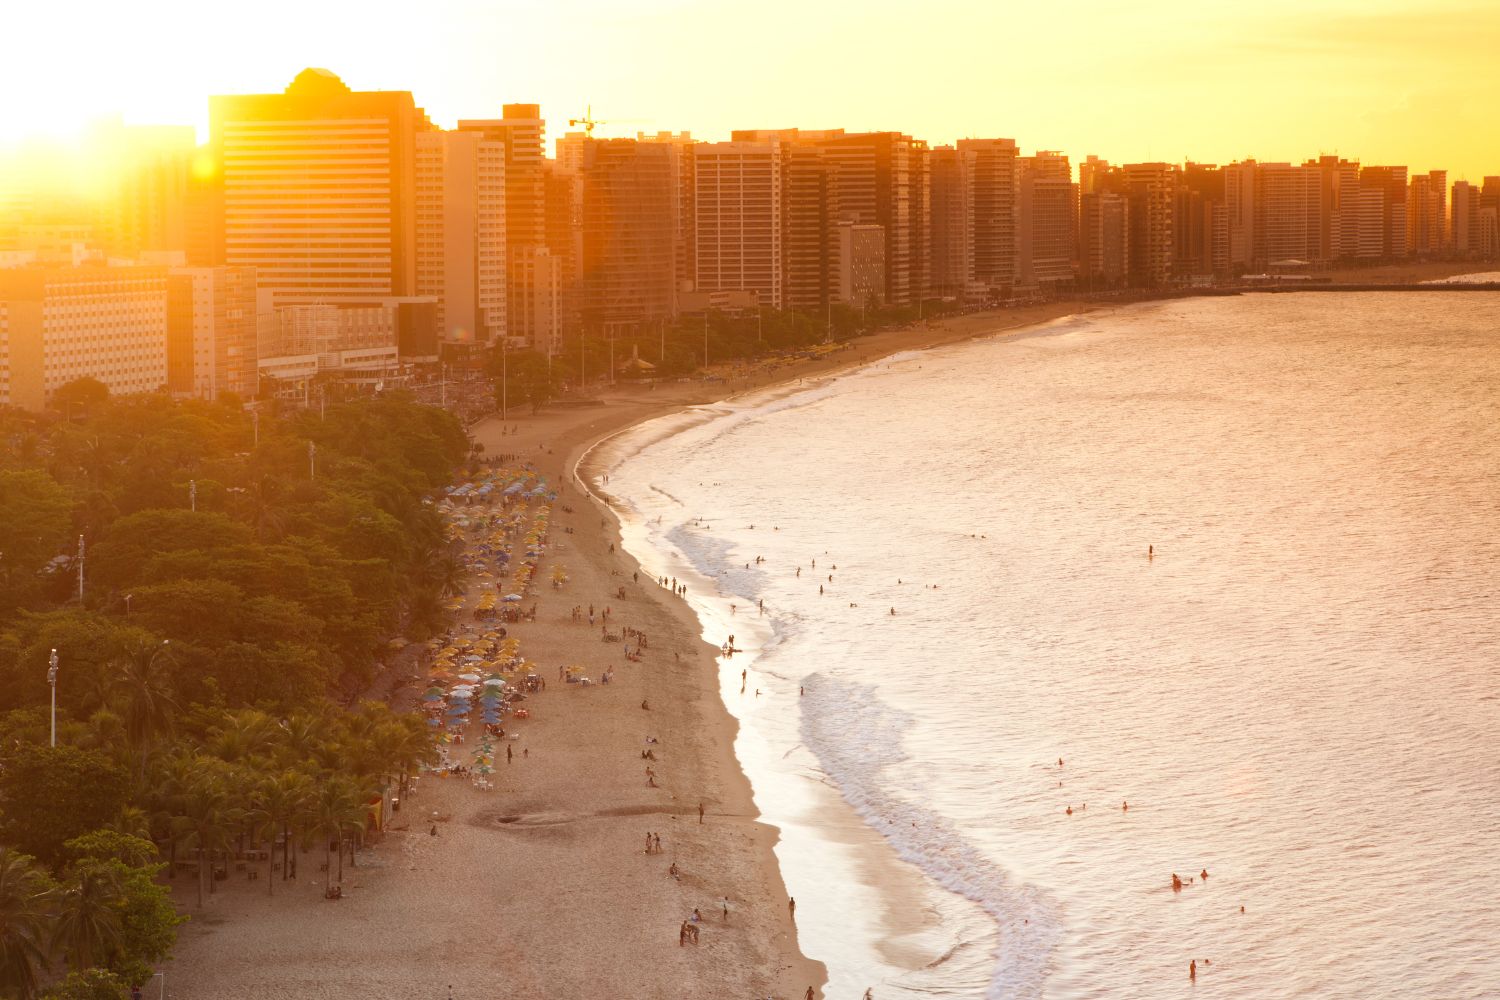 O que fazer em Fortaleza melhores passeios, praias e dicas de viagem